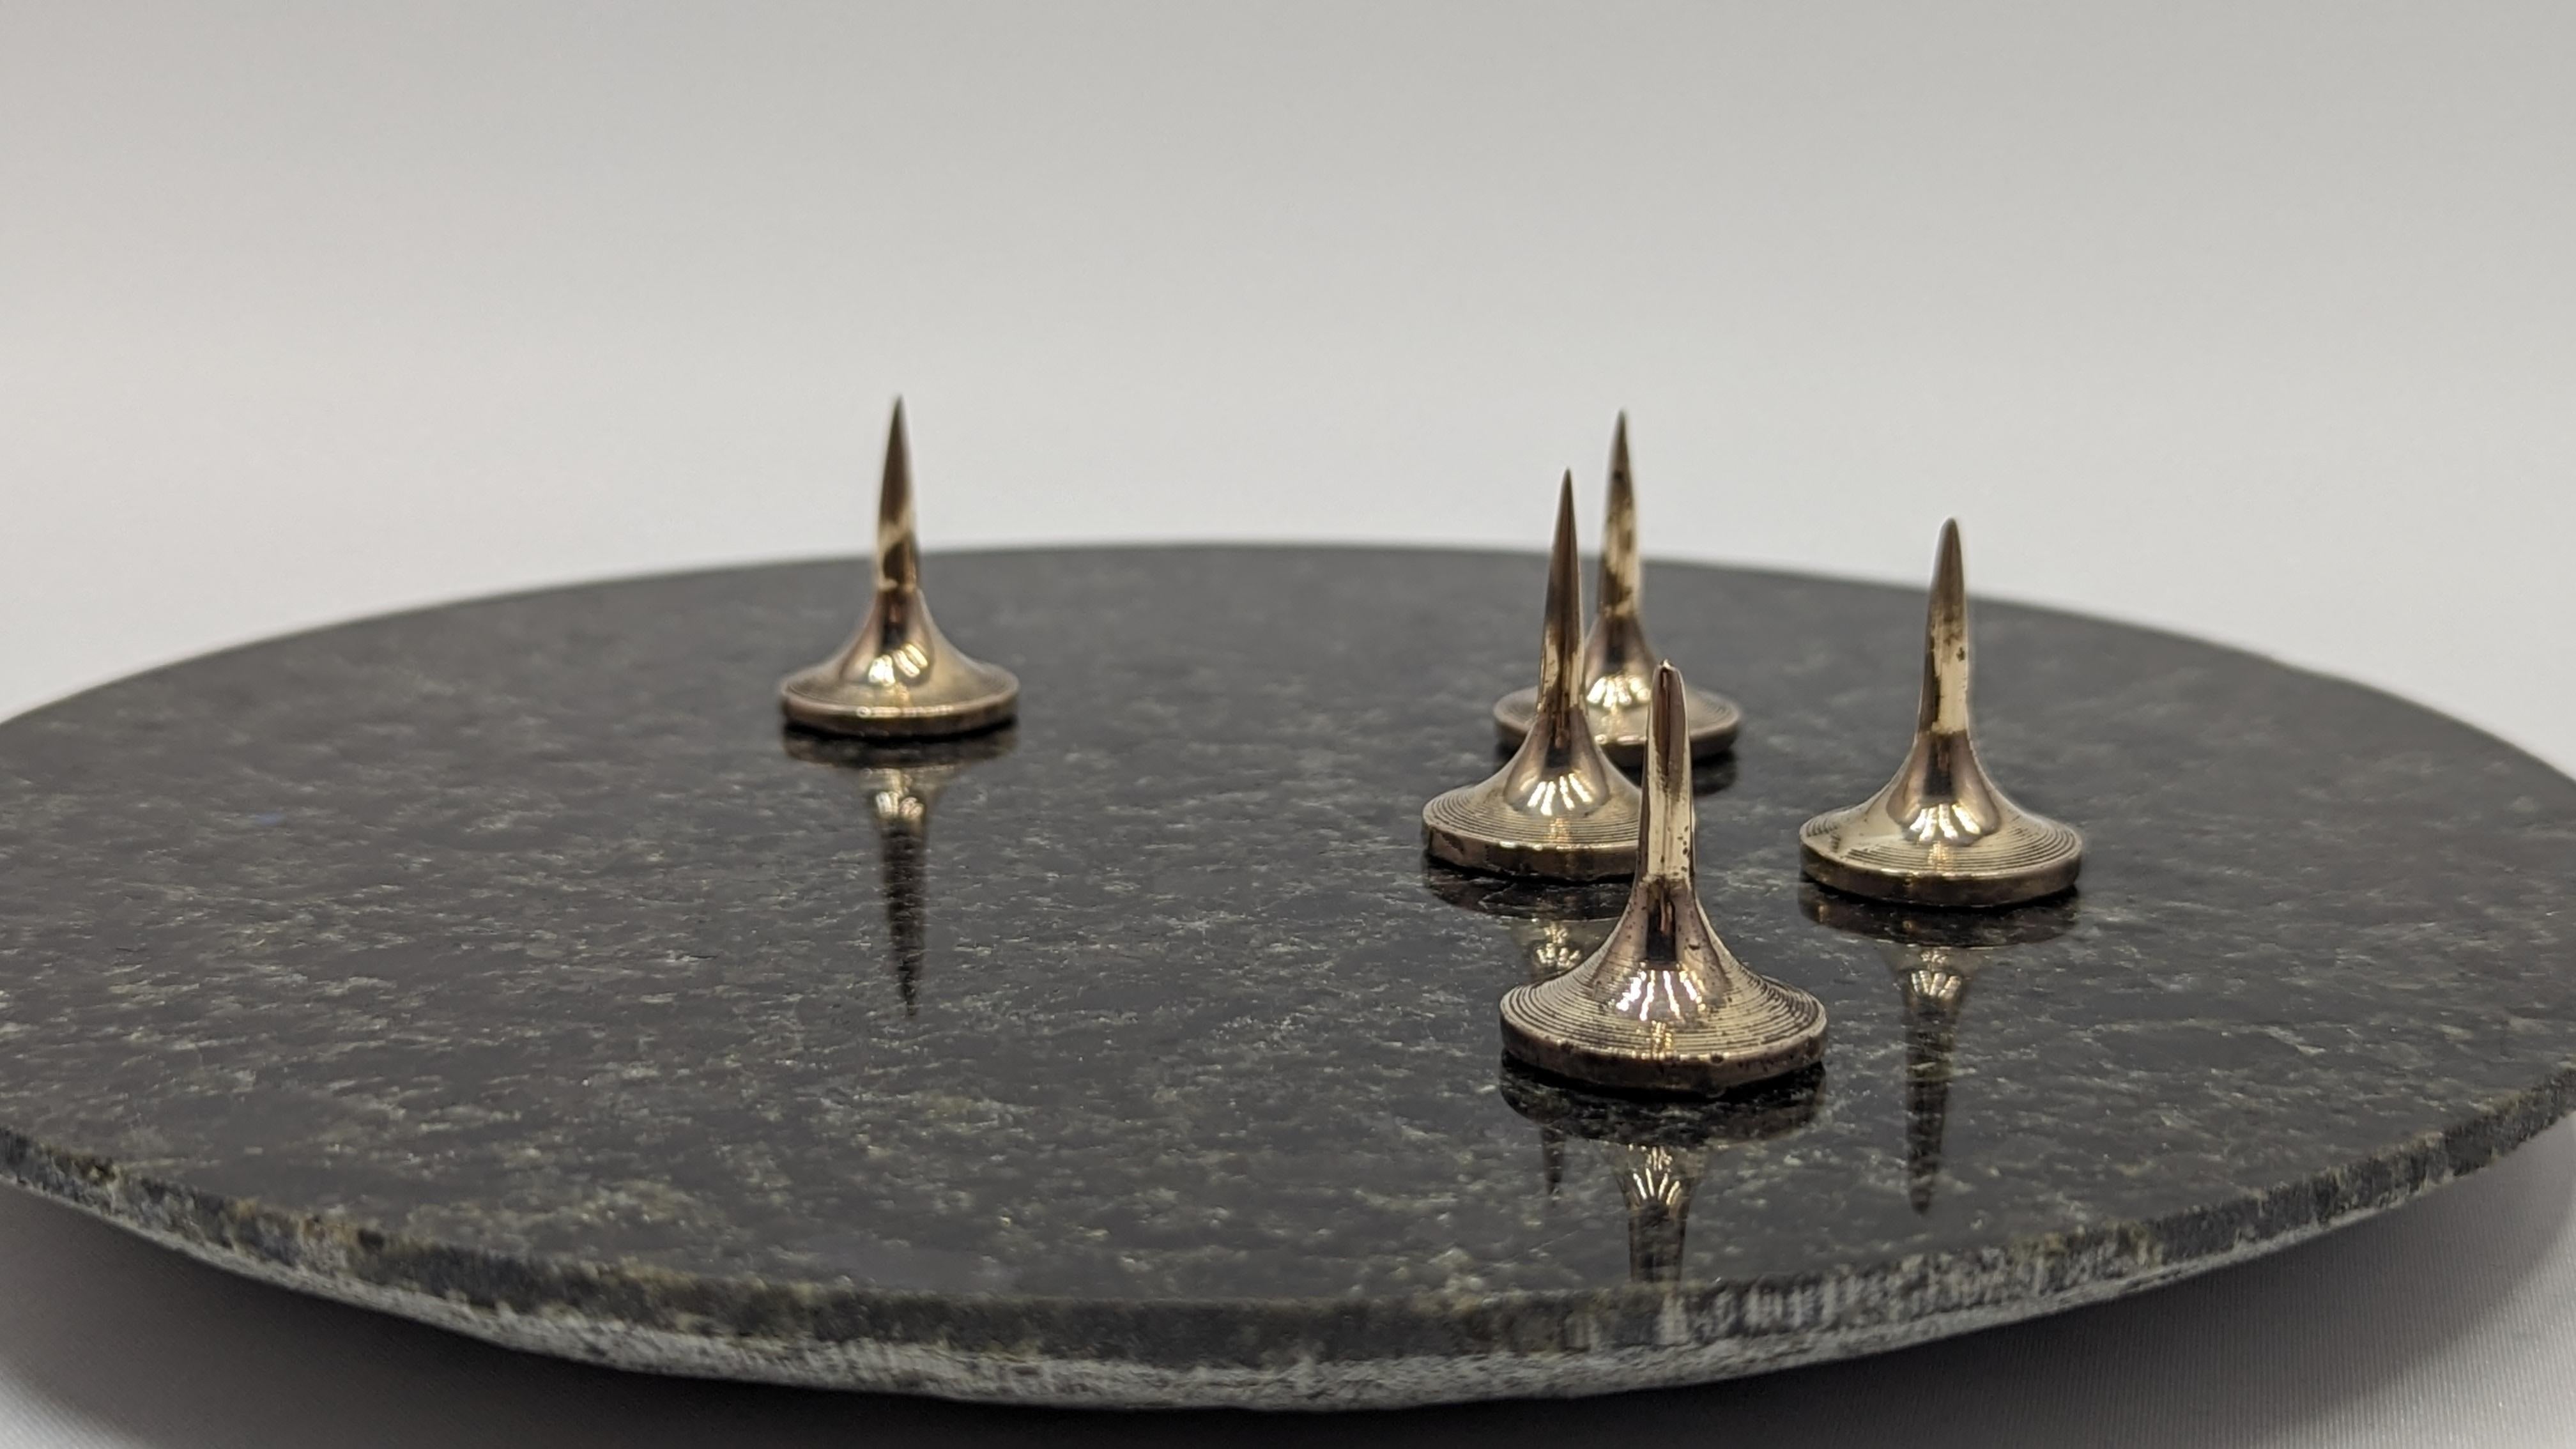 PEAKS
Kandelaber mit beweglichen Kerzenstiften aus Bronze. Jede Kerzenspitze kann entfernt werden, so dass Sie die Anzahl der Kerzen (bis zu 5) auf dem Granittablett variieren können.
Der Sockel ist aus einem grün-grauen Granit aus Portugal